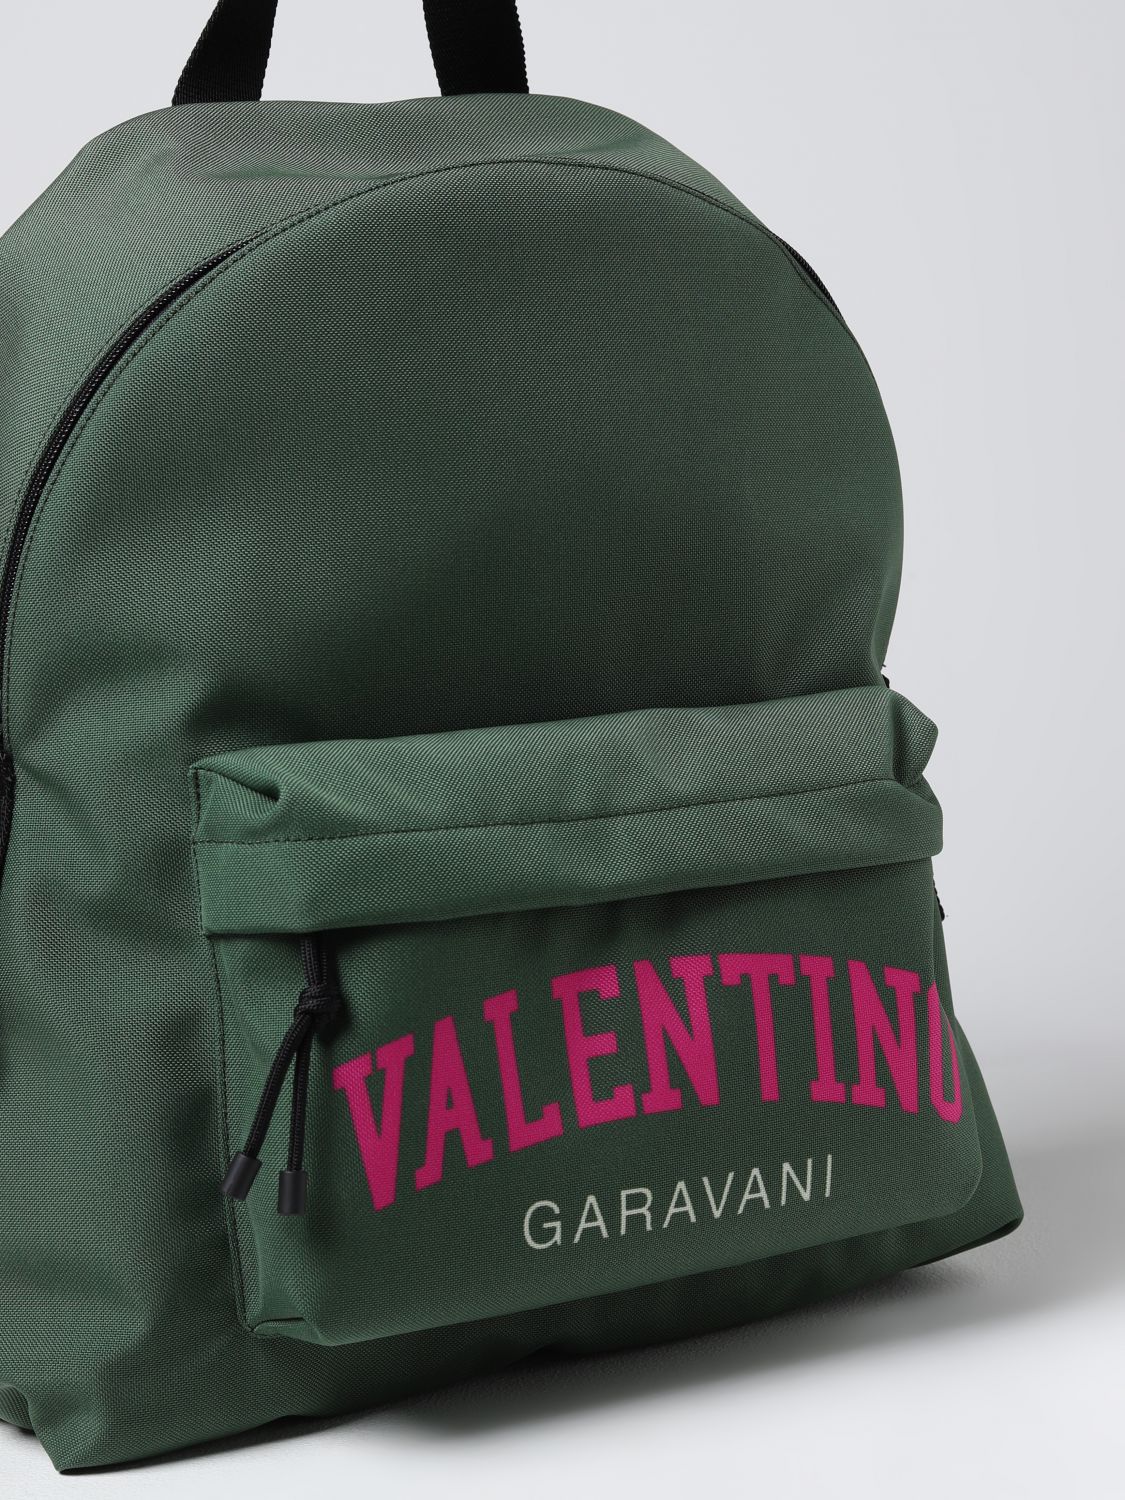 VALENTINO VALENTINO GARAVANI - FABRIC BACKPACK WITH LOGO – Baltini